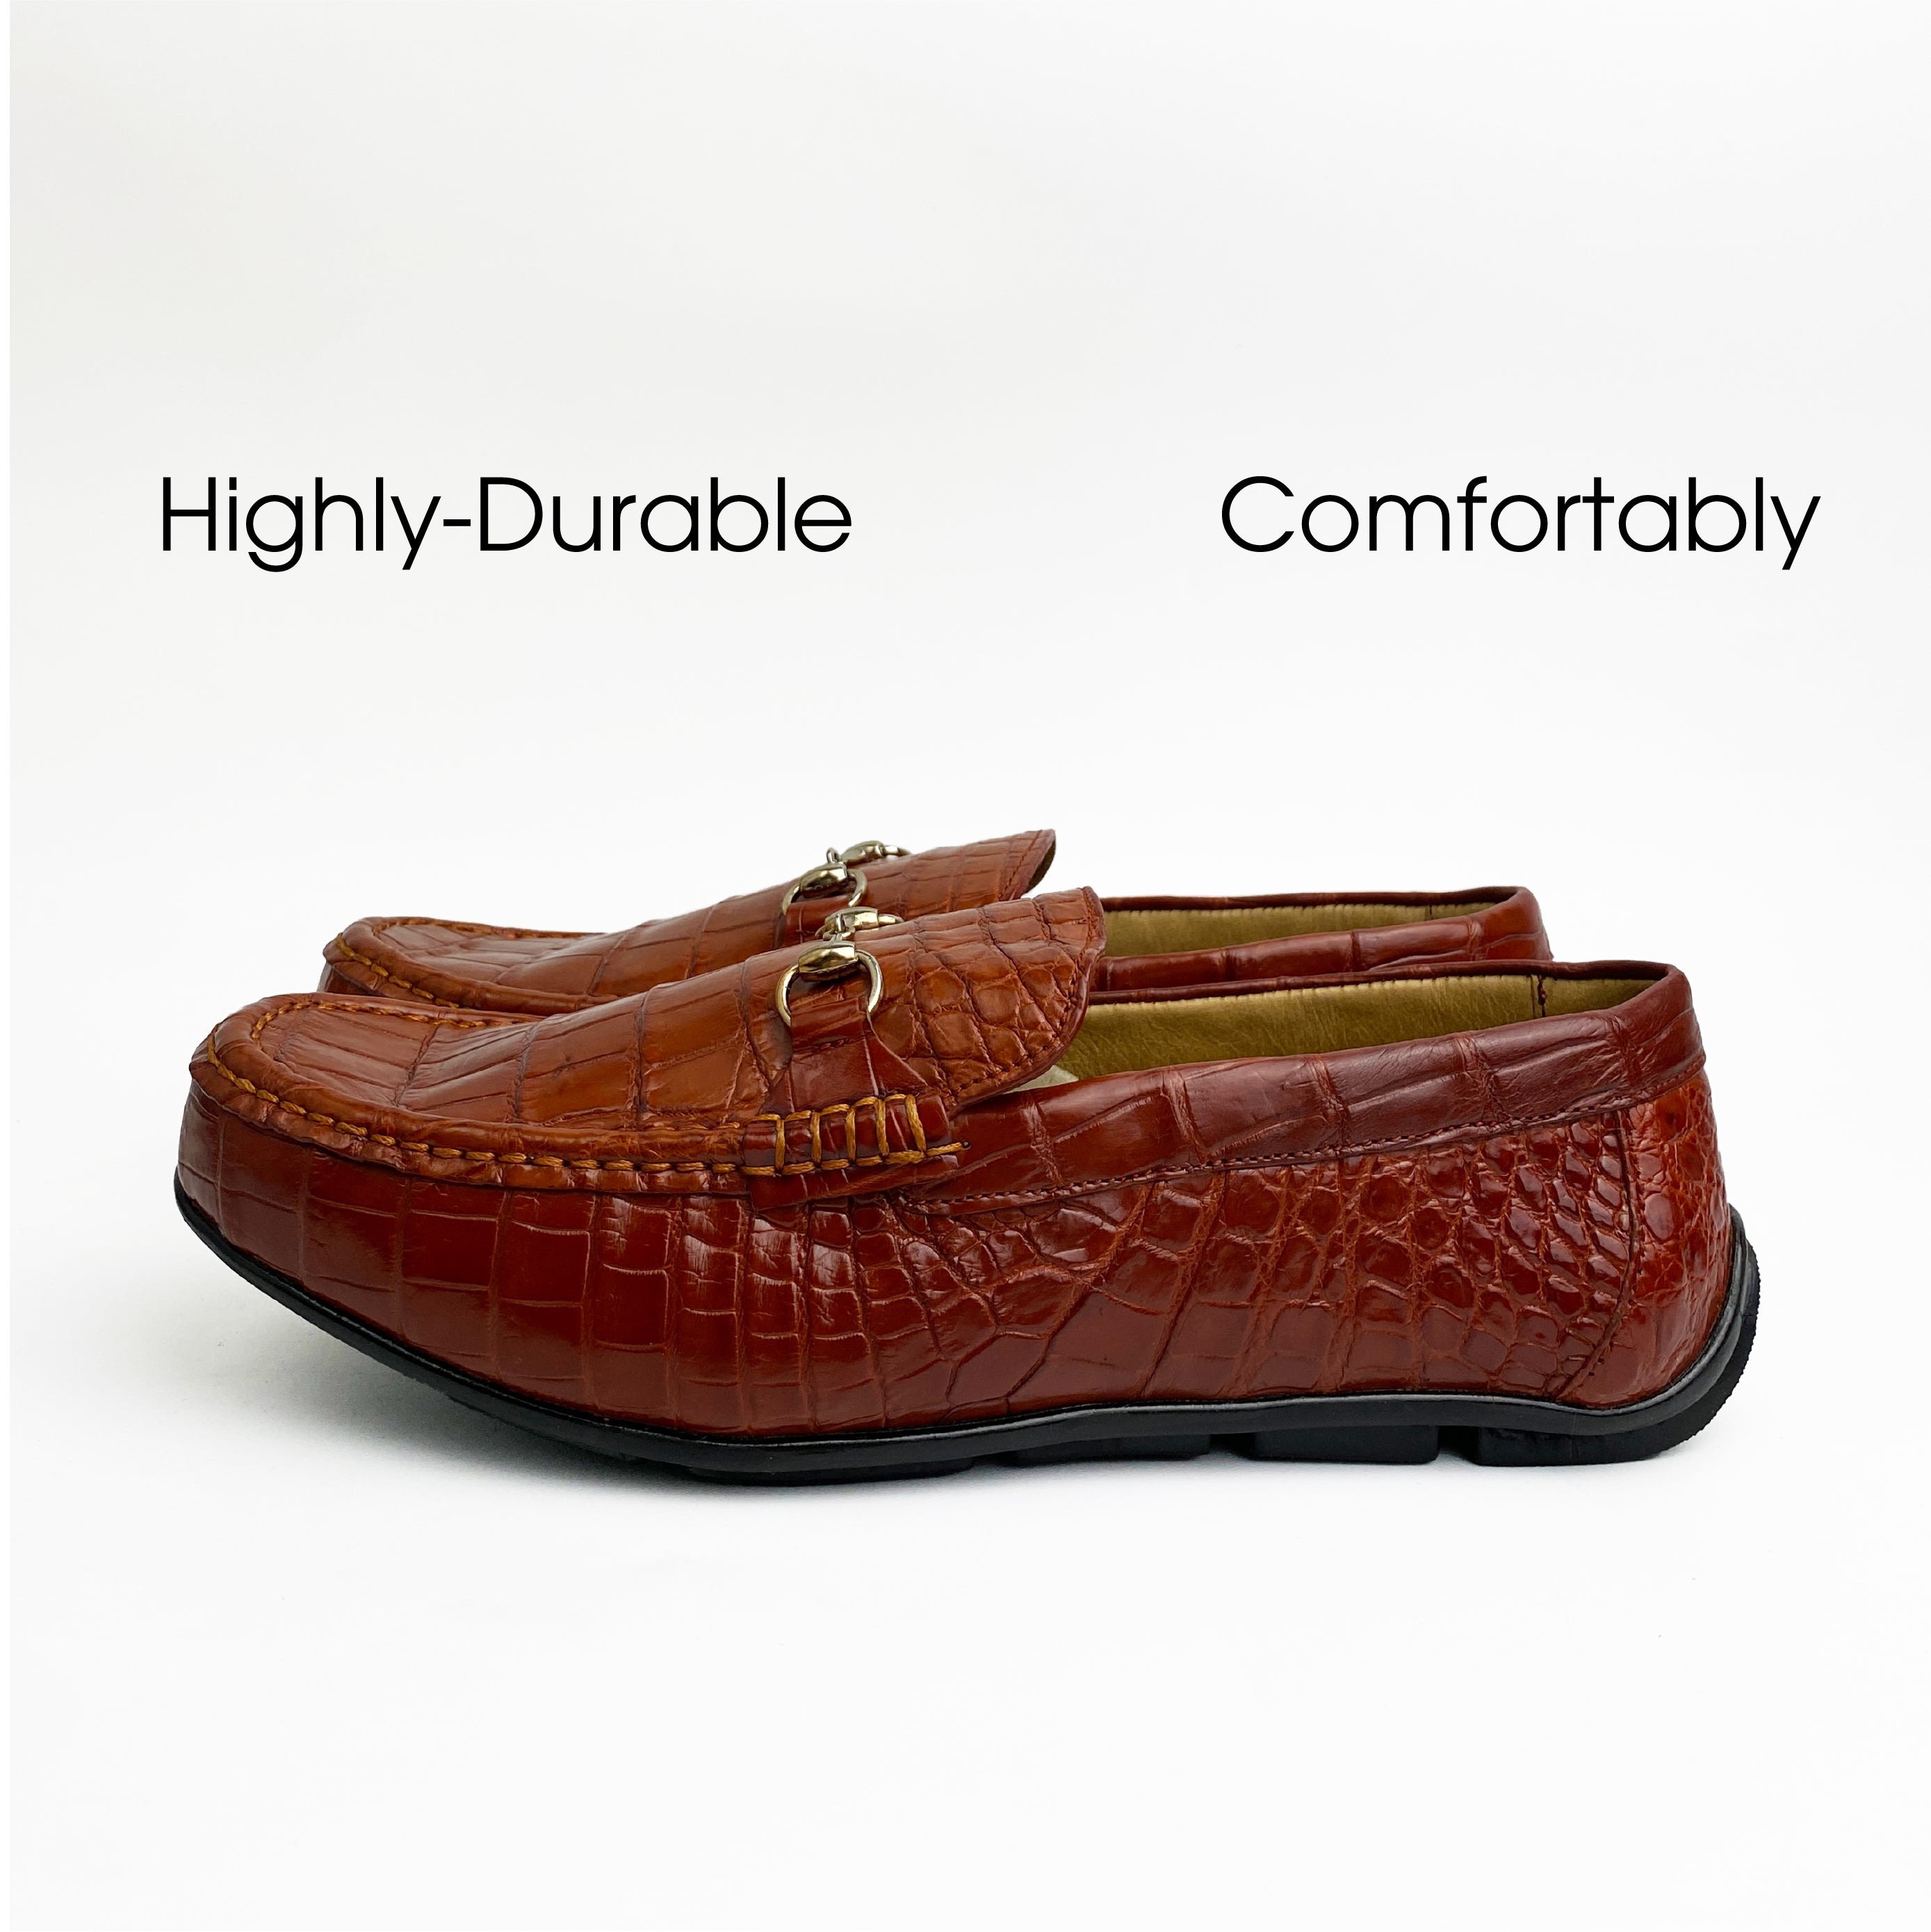 Men's Light Brown Alligator Leather Horsebit Loafers | Belly Crocodile Skin Loafer Shoes For Men - SH26C42